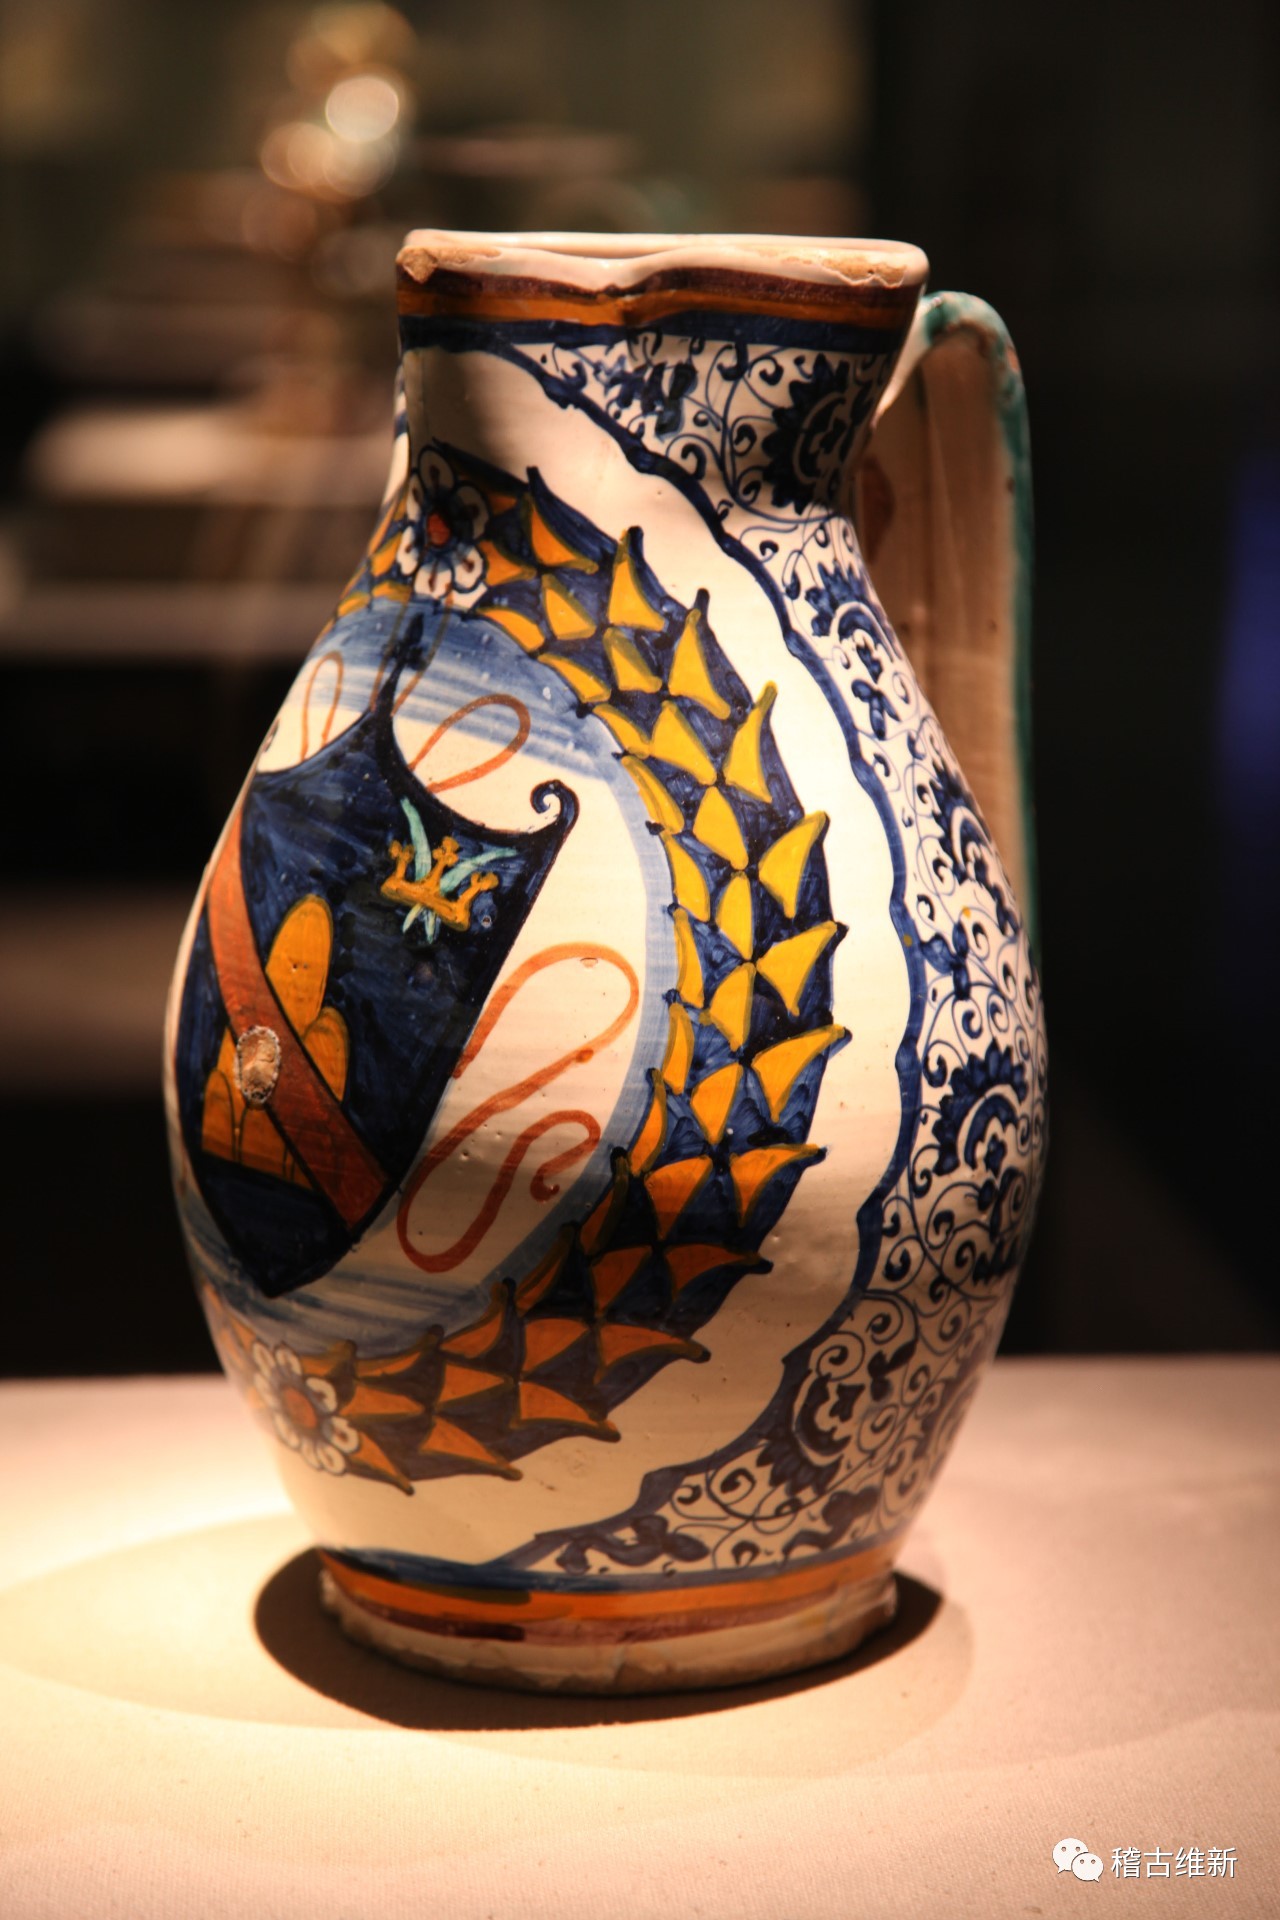 文艺复兴时期,将纹章图案烧制于定做的马约里卡陶器上作为身份的象征